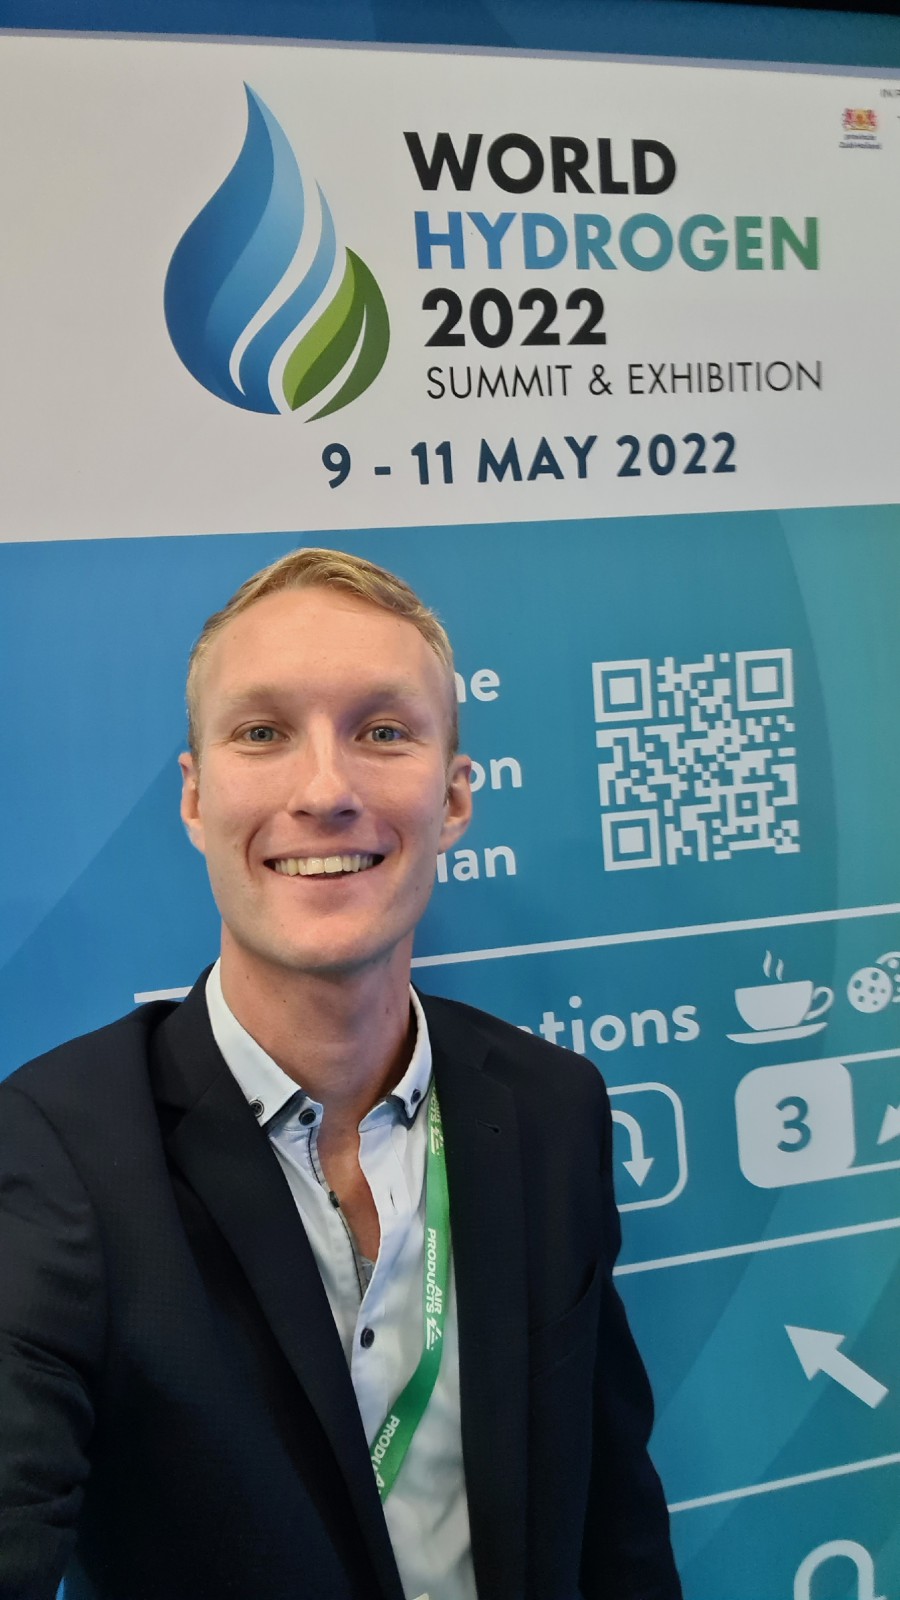 Schlegel und Partner visited the World Hydrogen 2022 Summit & Exhibition